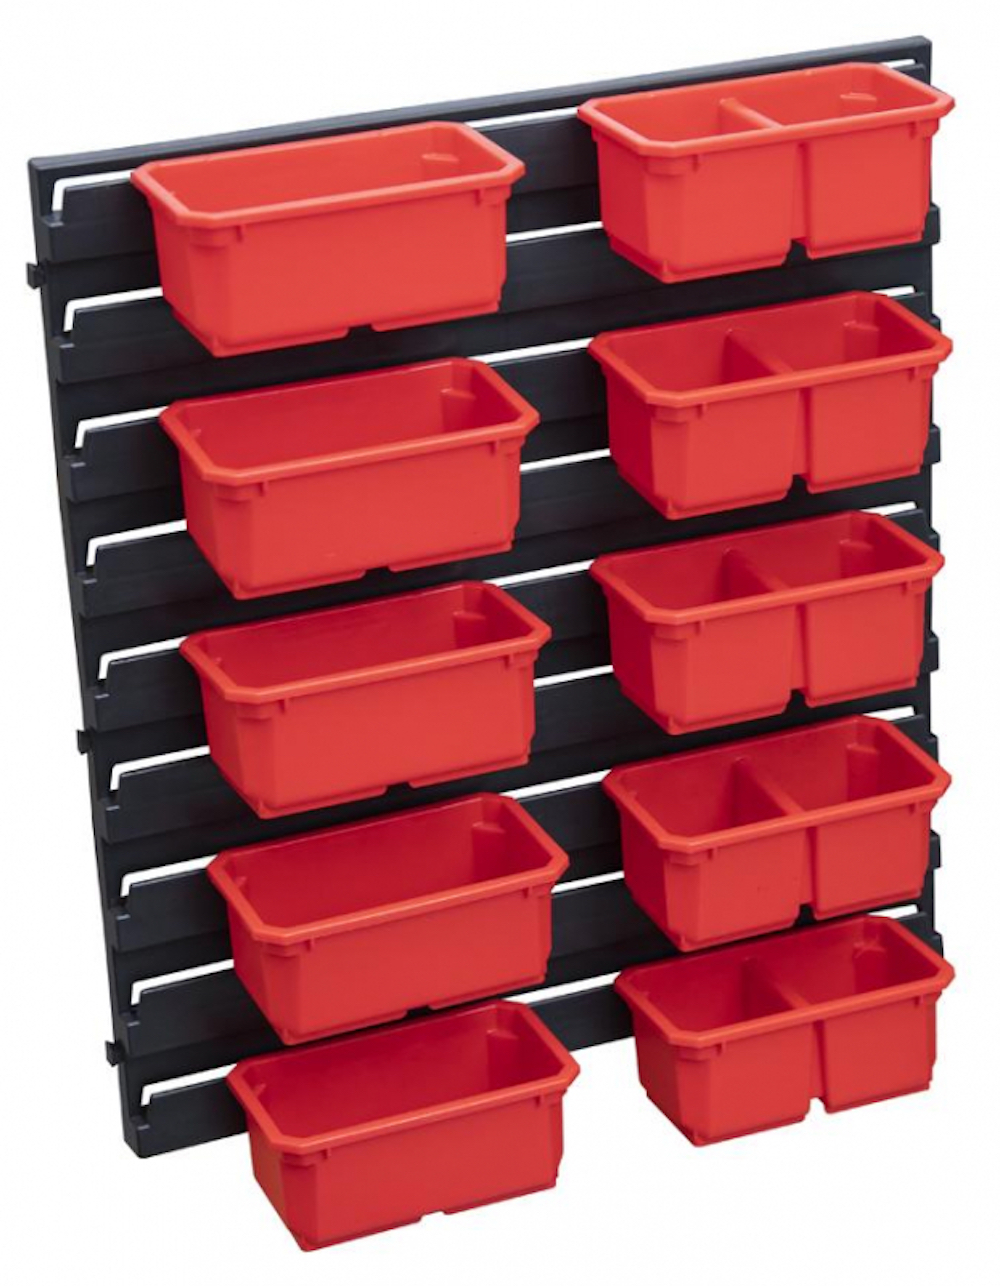 Tinker Kleinteilewandregal mit 10 Sortimentskästen schwarz/rot | HxBxT 60x40x43cm | Kleinteilemagazin, Kleinteileregal, Sortimentsschrank, Sichtboxenregal, Regalsystem